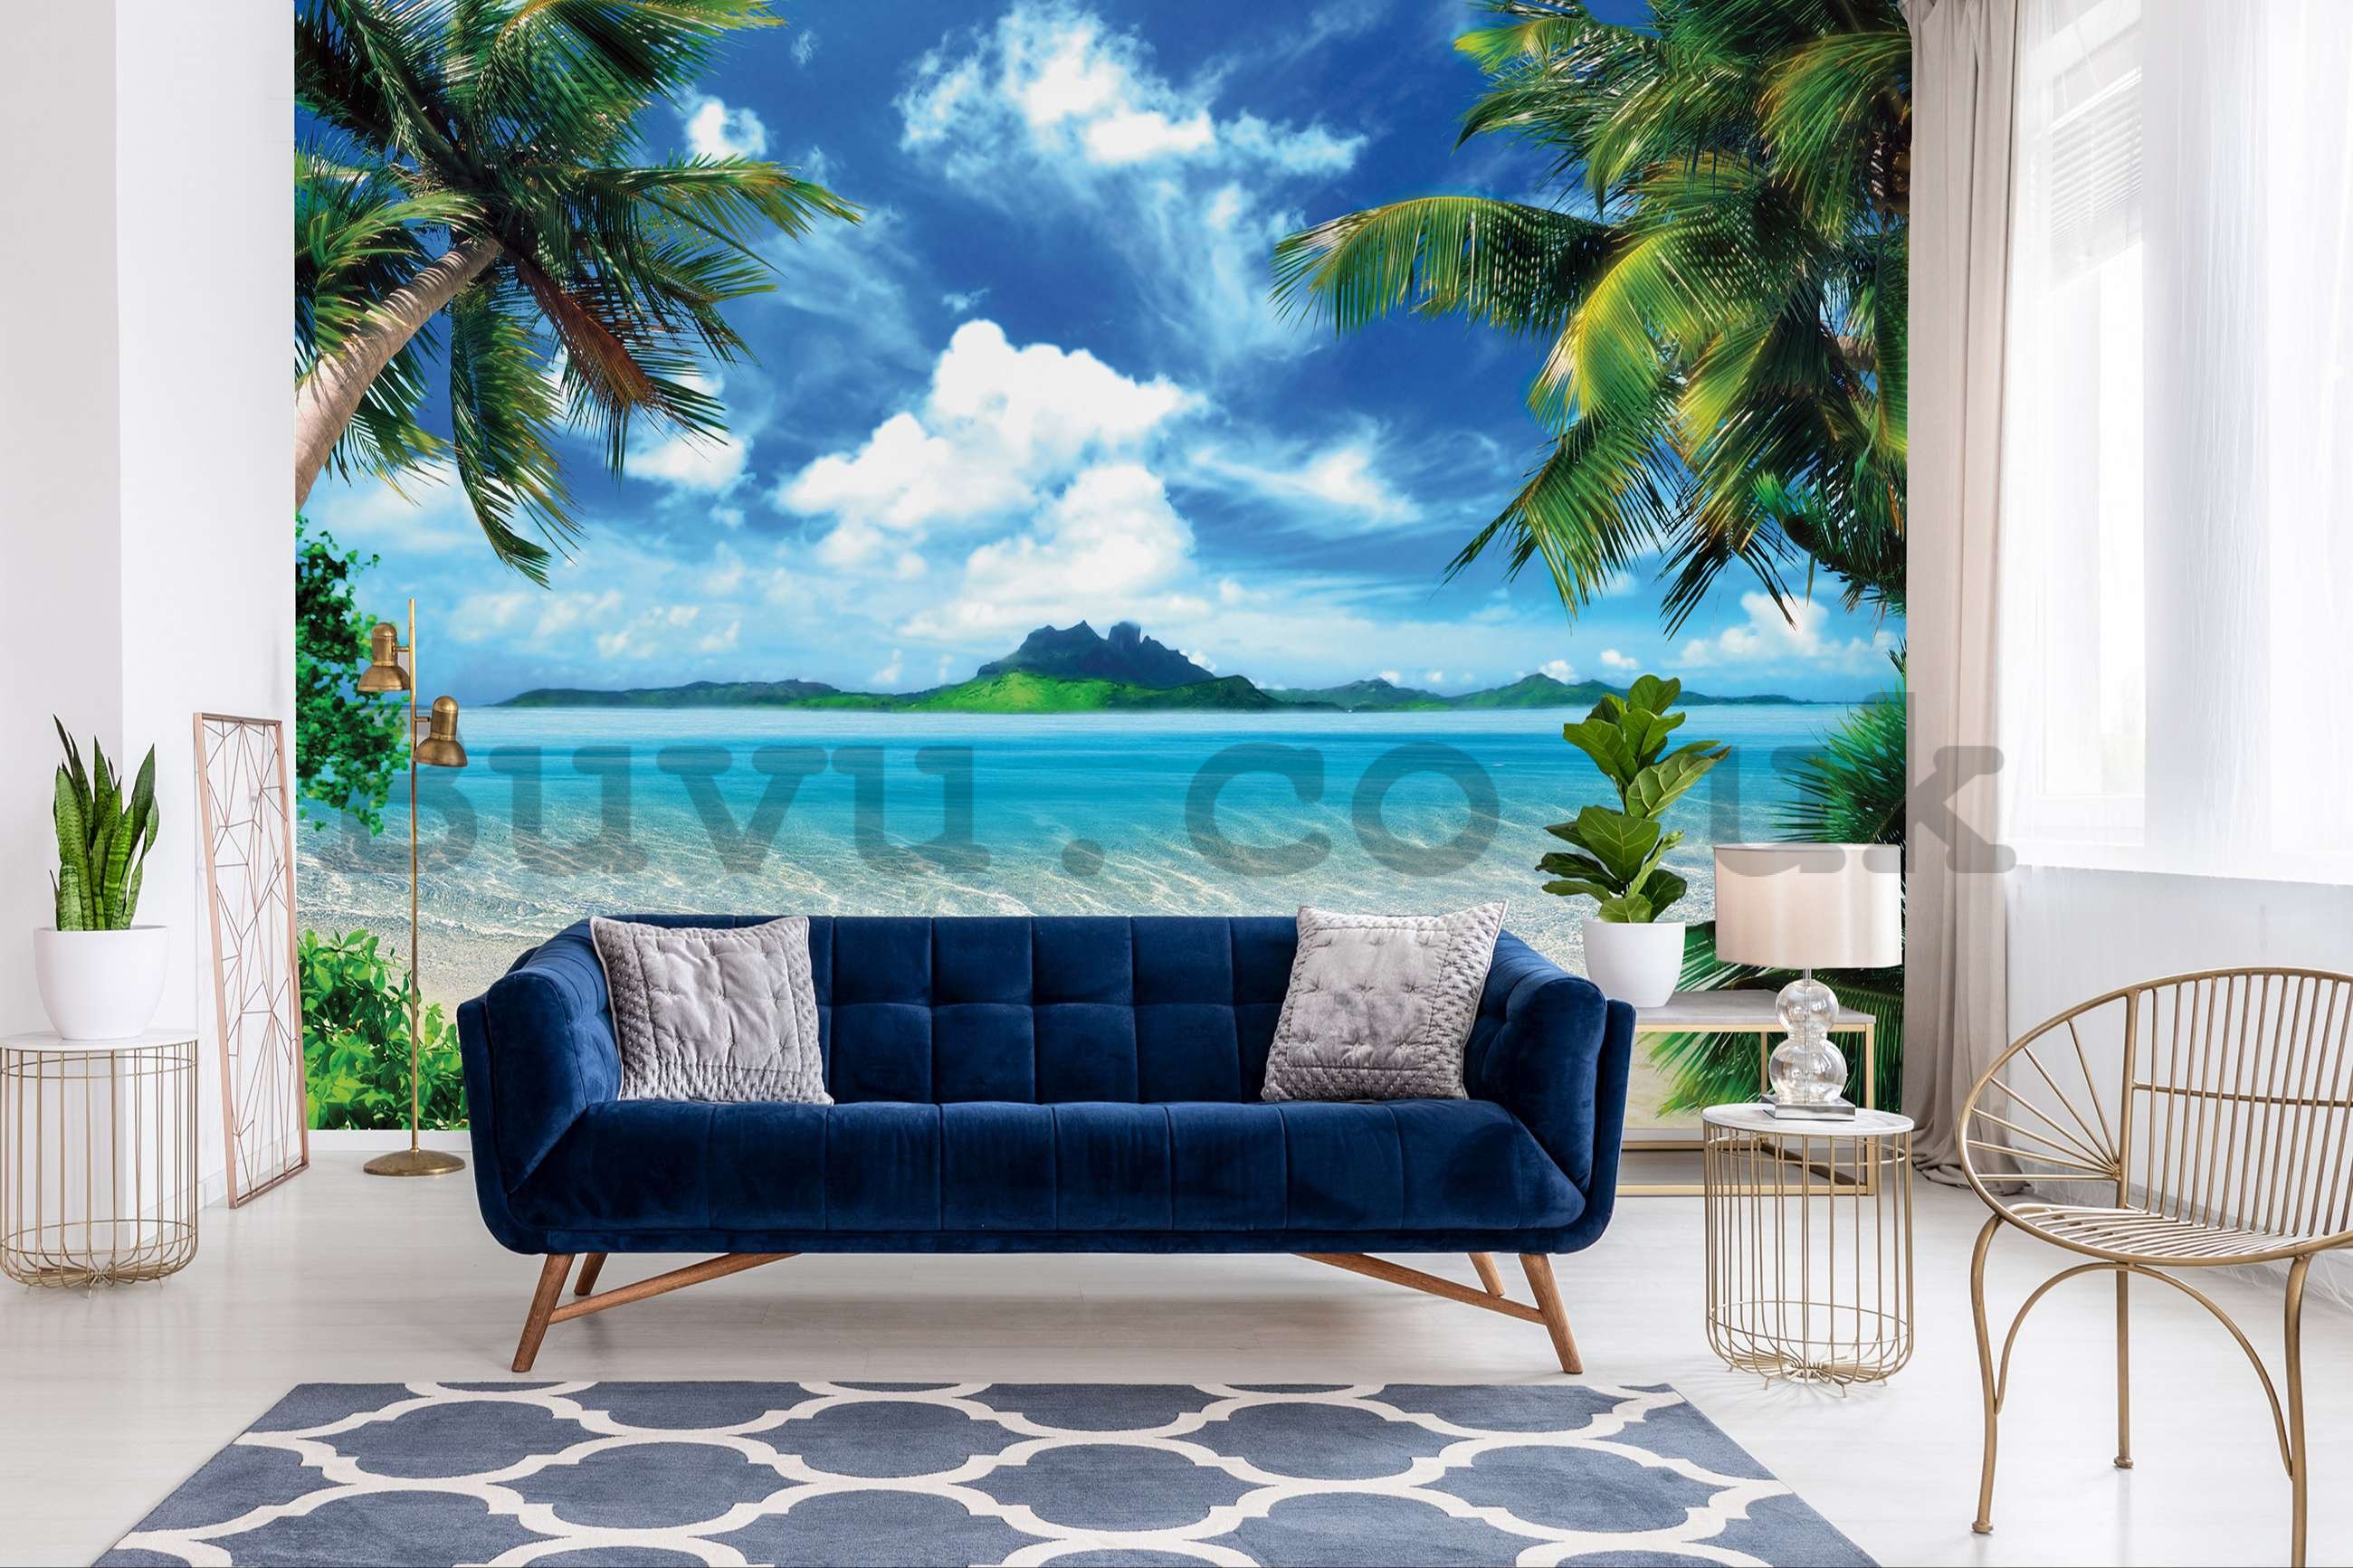 Wall mural vlies: In a tropical paradise - 416x254 cm